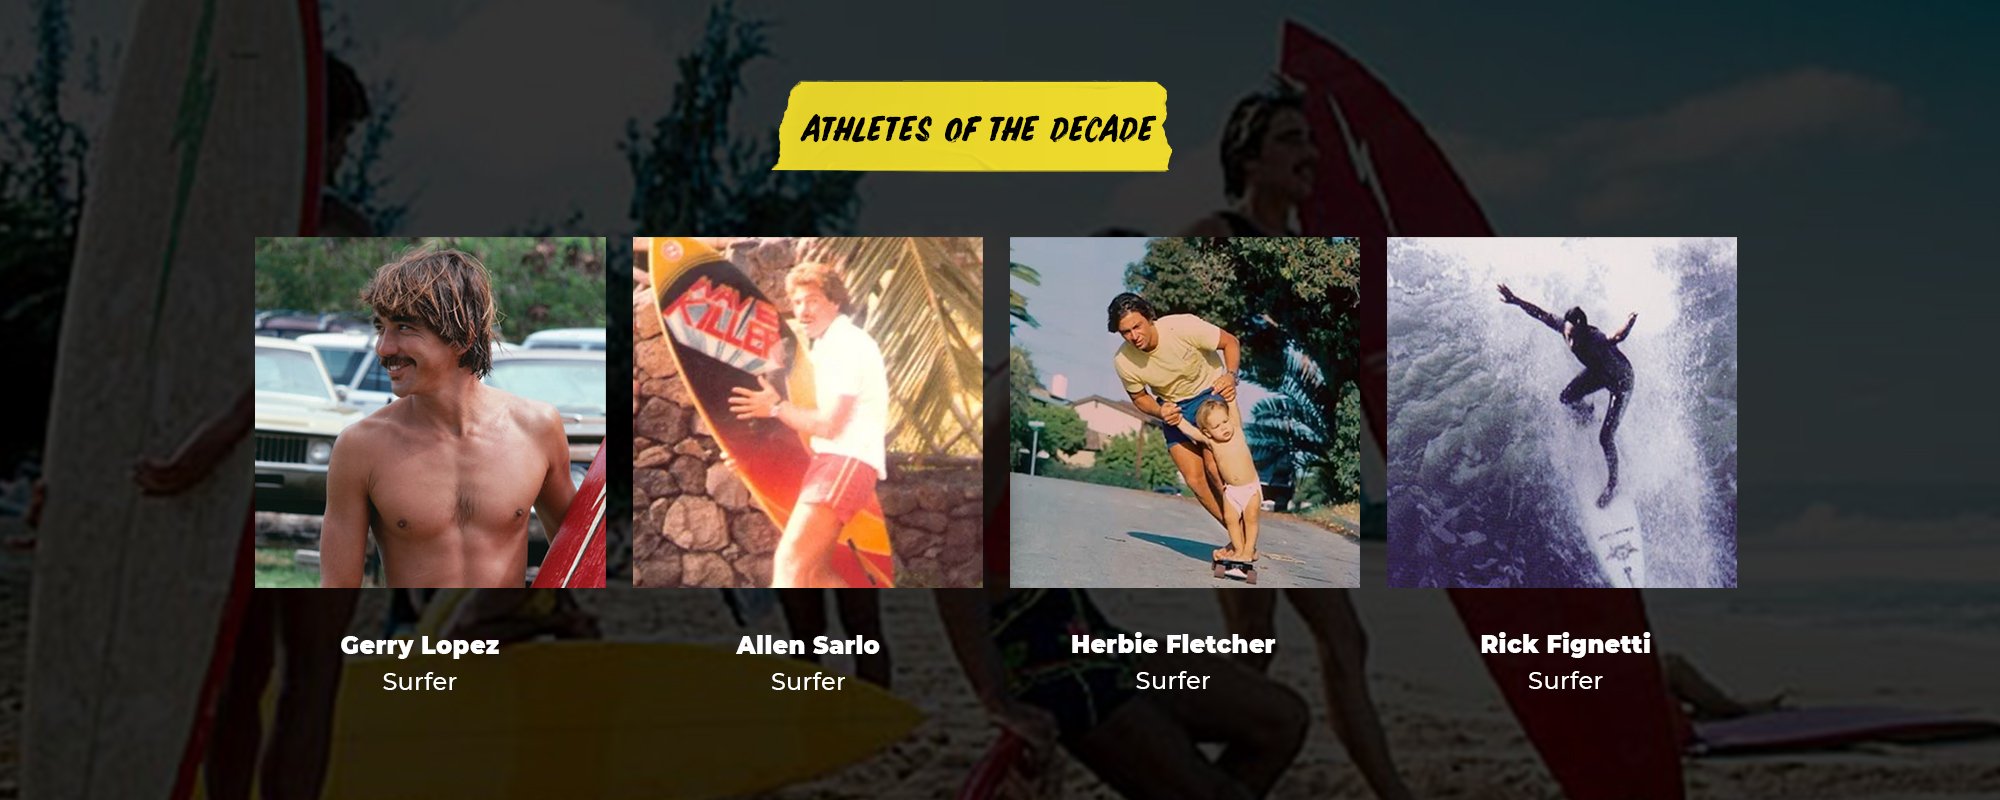 Athletes of the Decade | Gerry Lopez, Surfer | Allen Sarlo, Surfer | Herbie Fletcher, Surfer | Rick Fignetti, Surfer